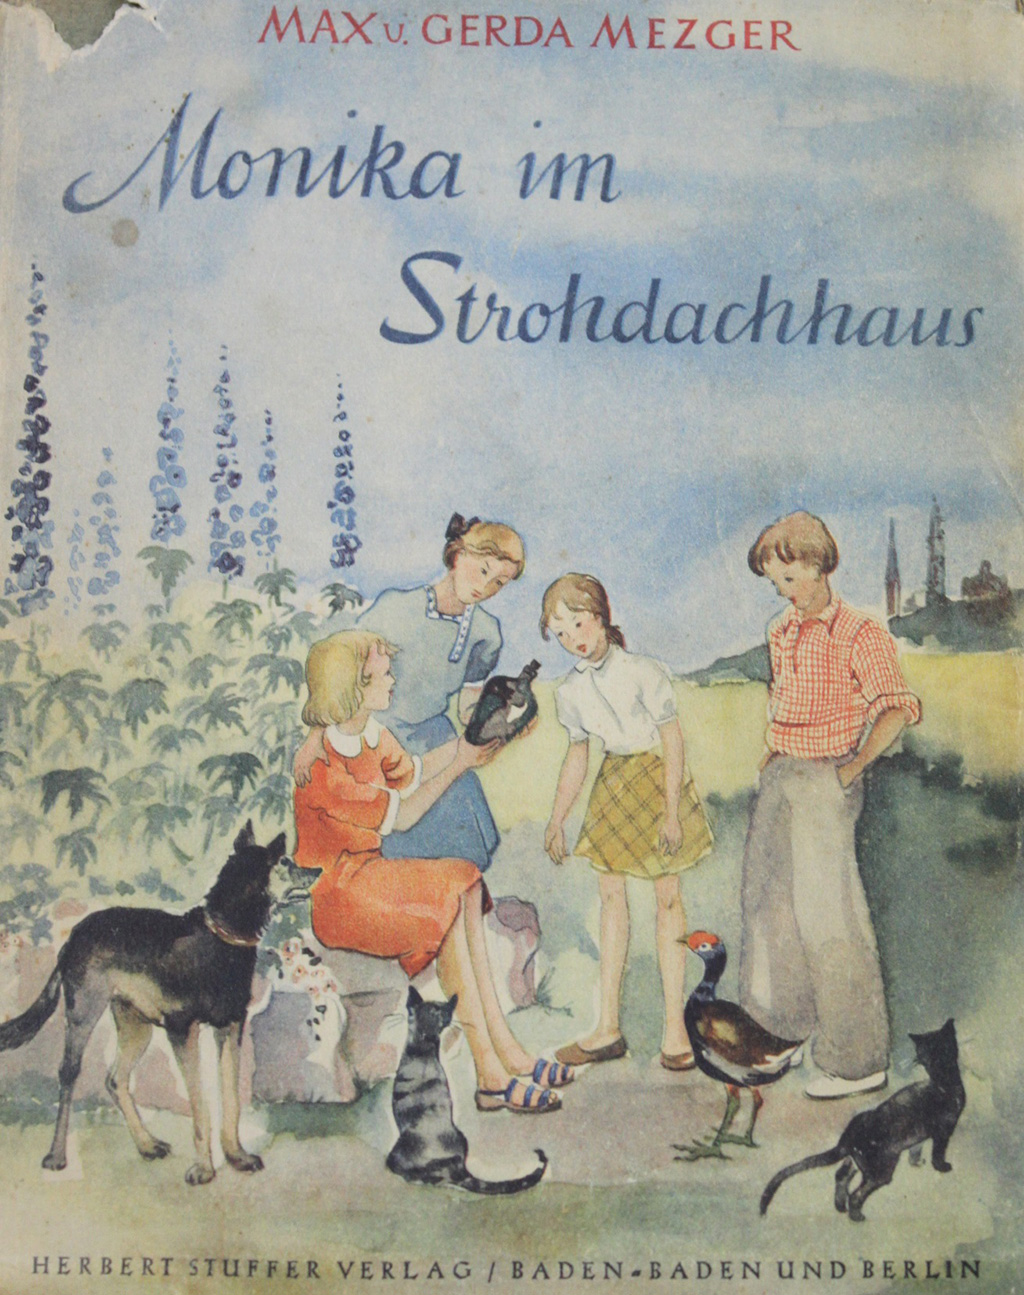 Gezeigt wird der Schutzumschlag des Kinderbuches „Monika im Strohdachhaus“ von Max und Gerda Mezger. Es erschien im Verlag von Herbert Stuffer im Jahr 1941. Zu sehen sind vier Kinder, umringt von Tieren, vor einer Kulisse aus Rittersporn. Eines der Kinder zeigt den anderen eine verkorkte Flasche.